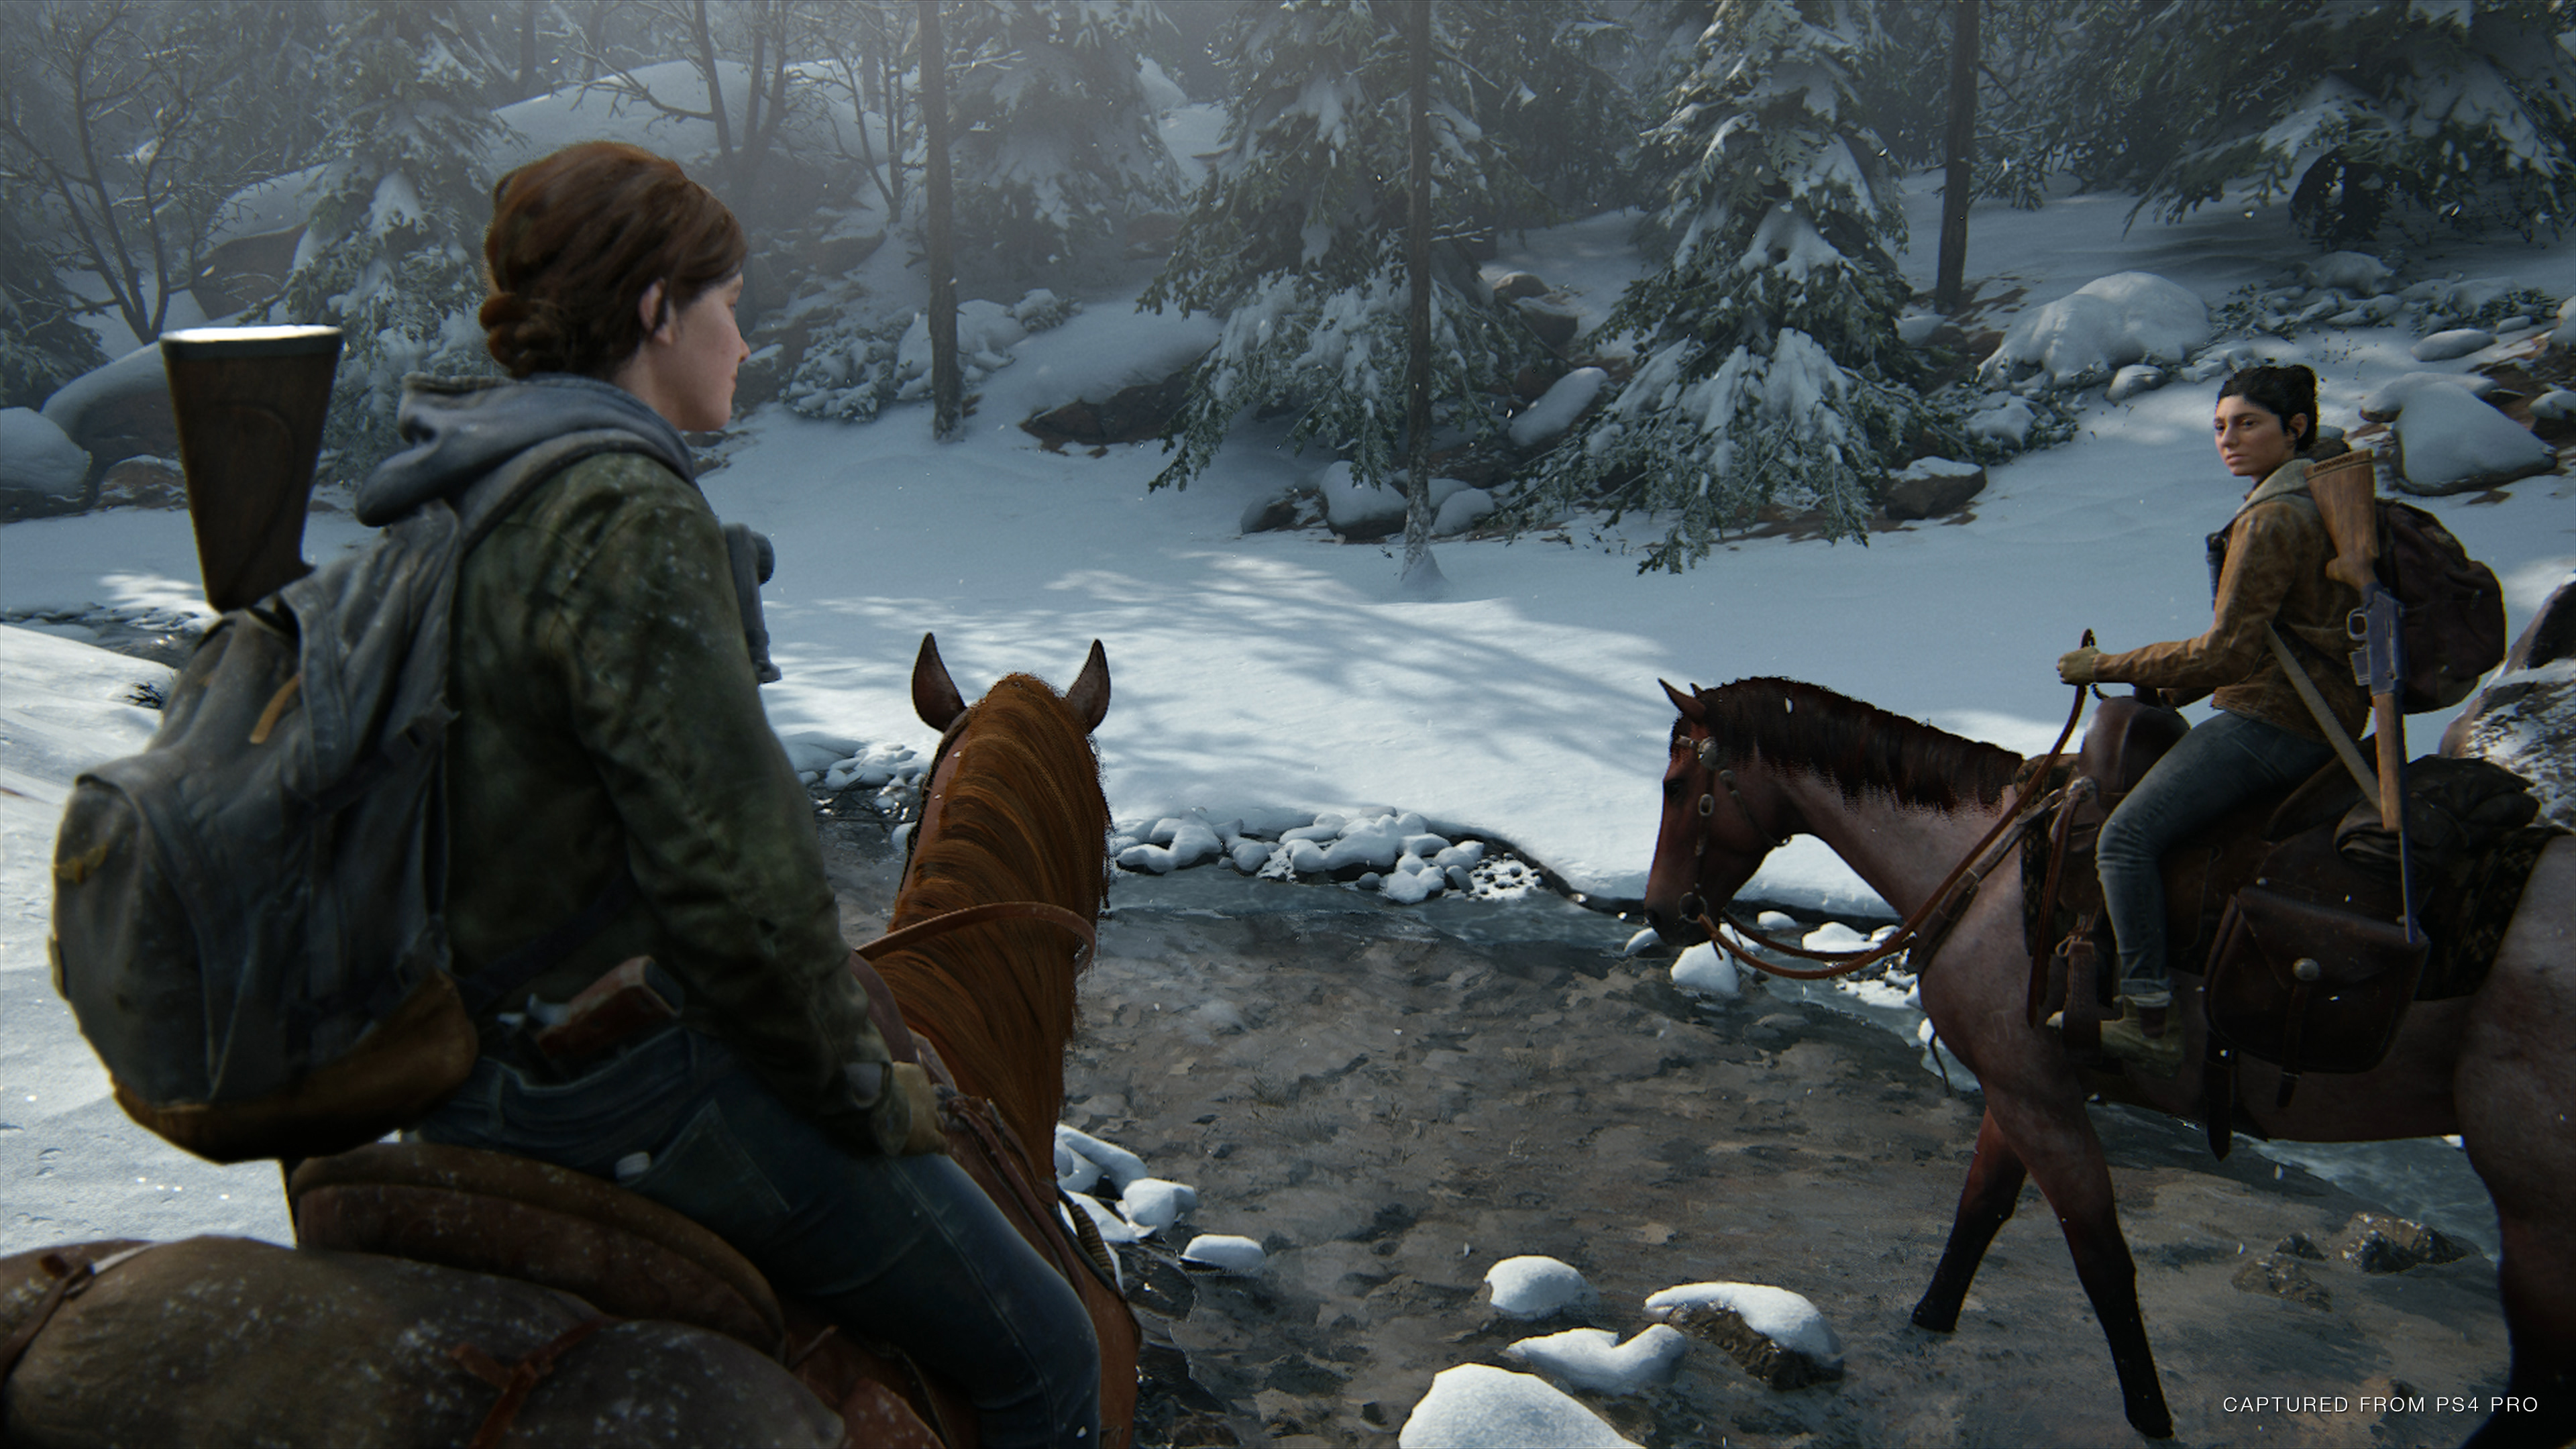 48797945602 d38824454b o - Neue Details zum Gameplay von The Last of Us Part II enthüllt